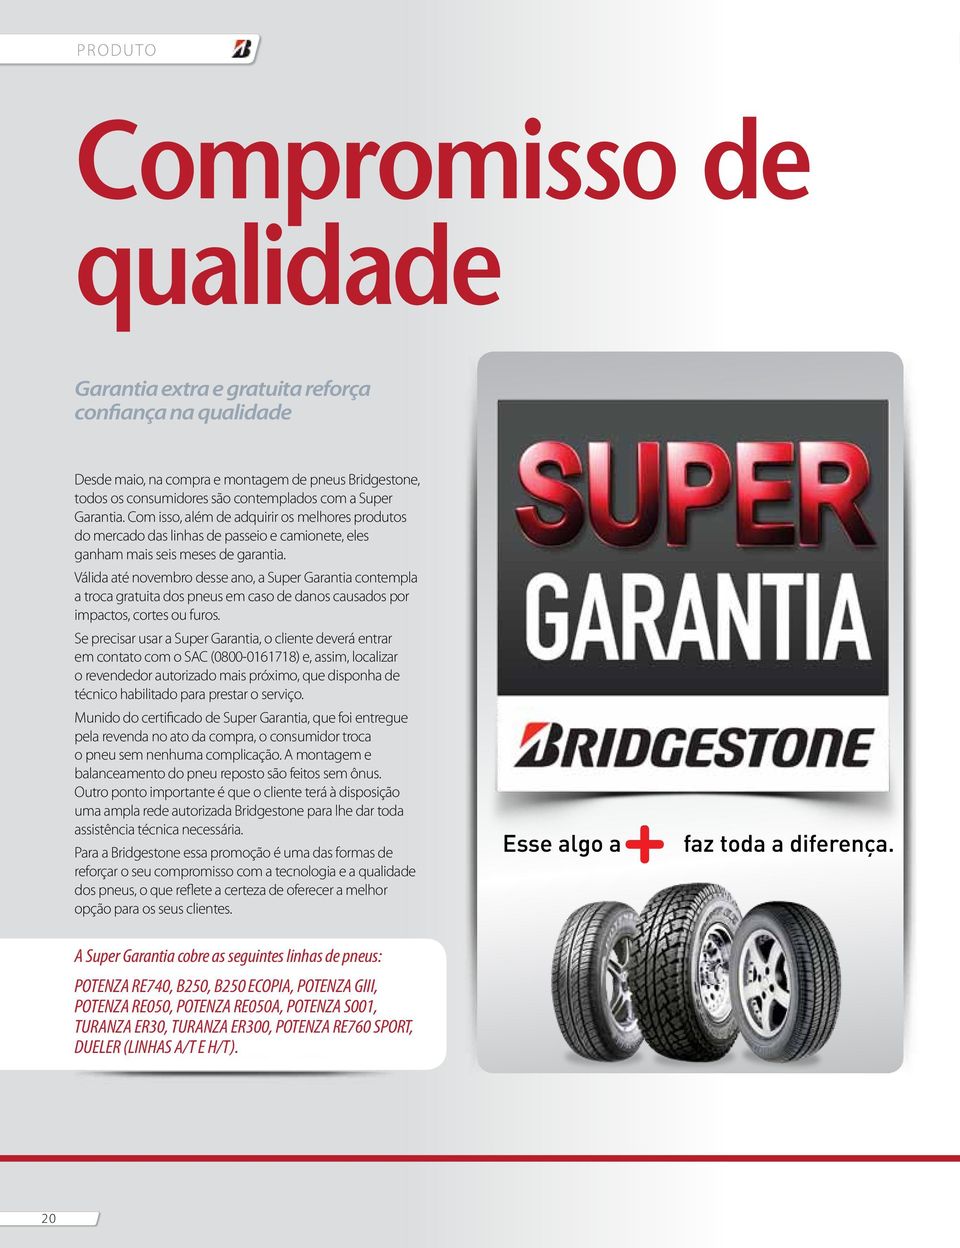 Válida até novembro desse ano, a Super Garantia contempla a troca gratuita dos pneus em caso de danos causados por impactos, cortes ou furos.